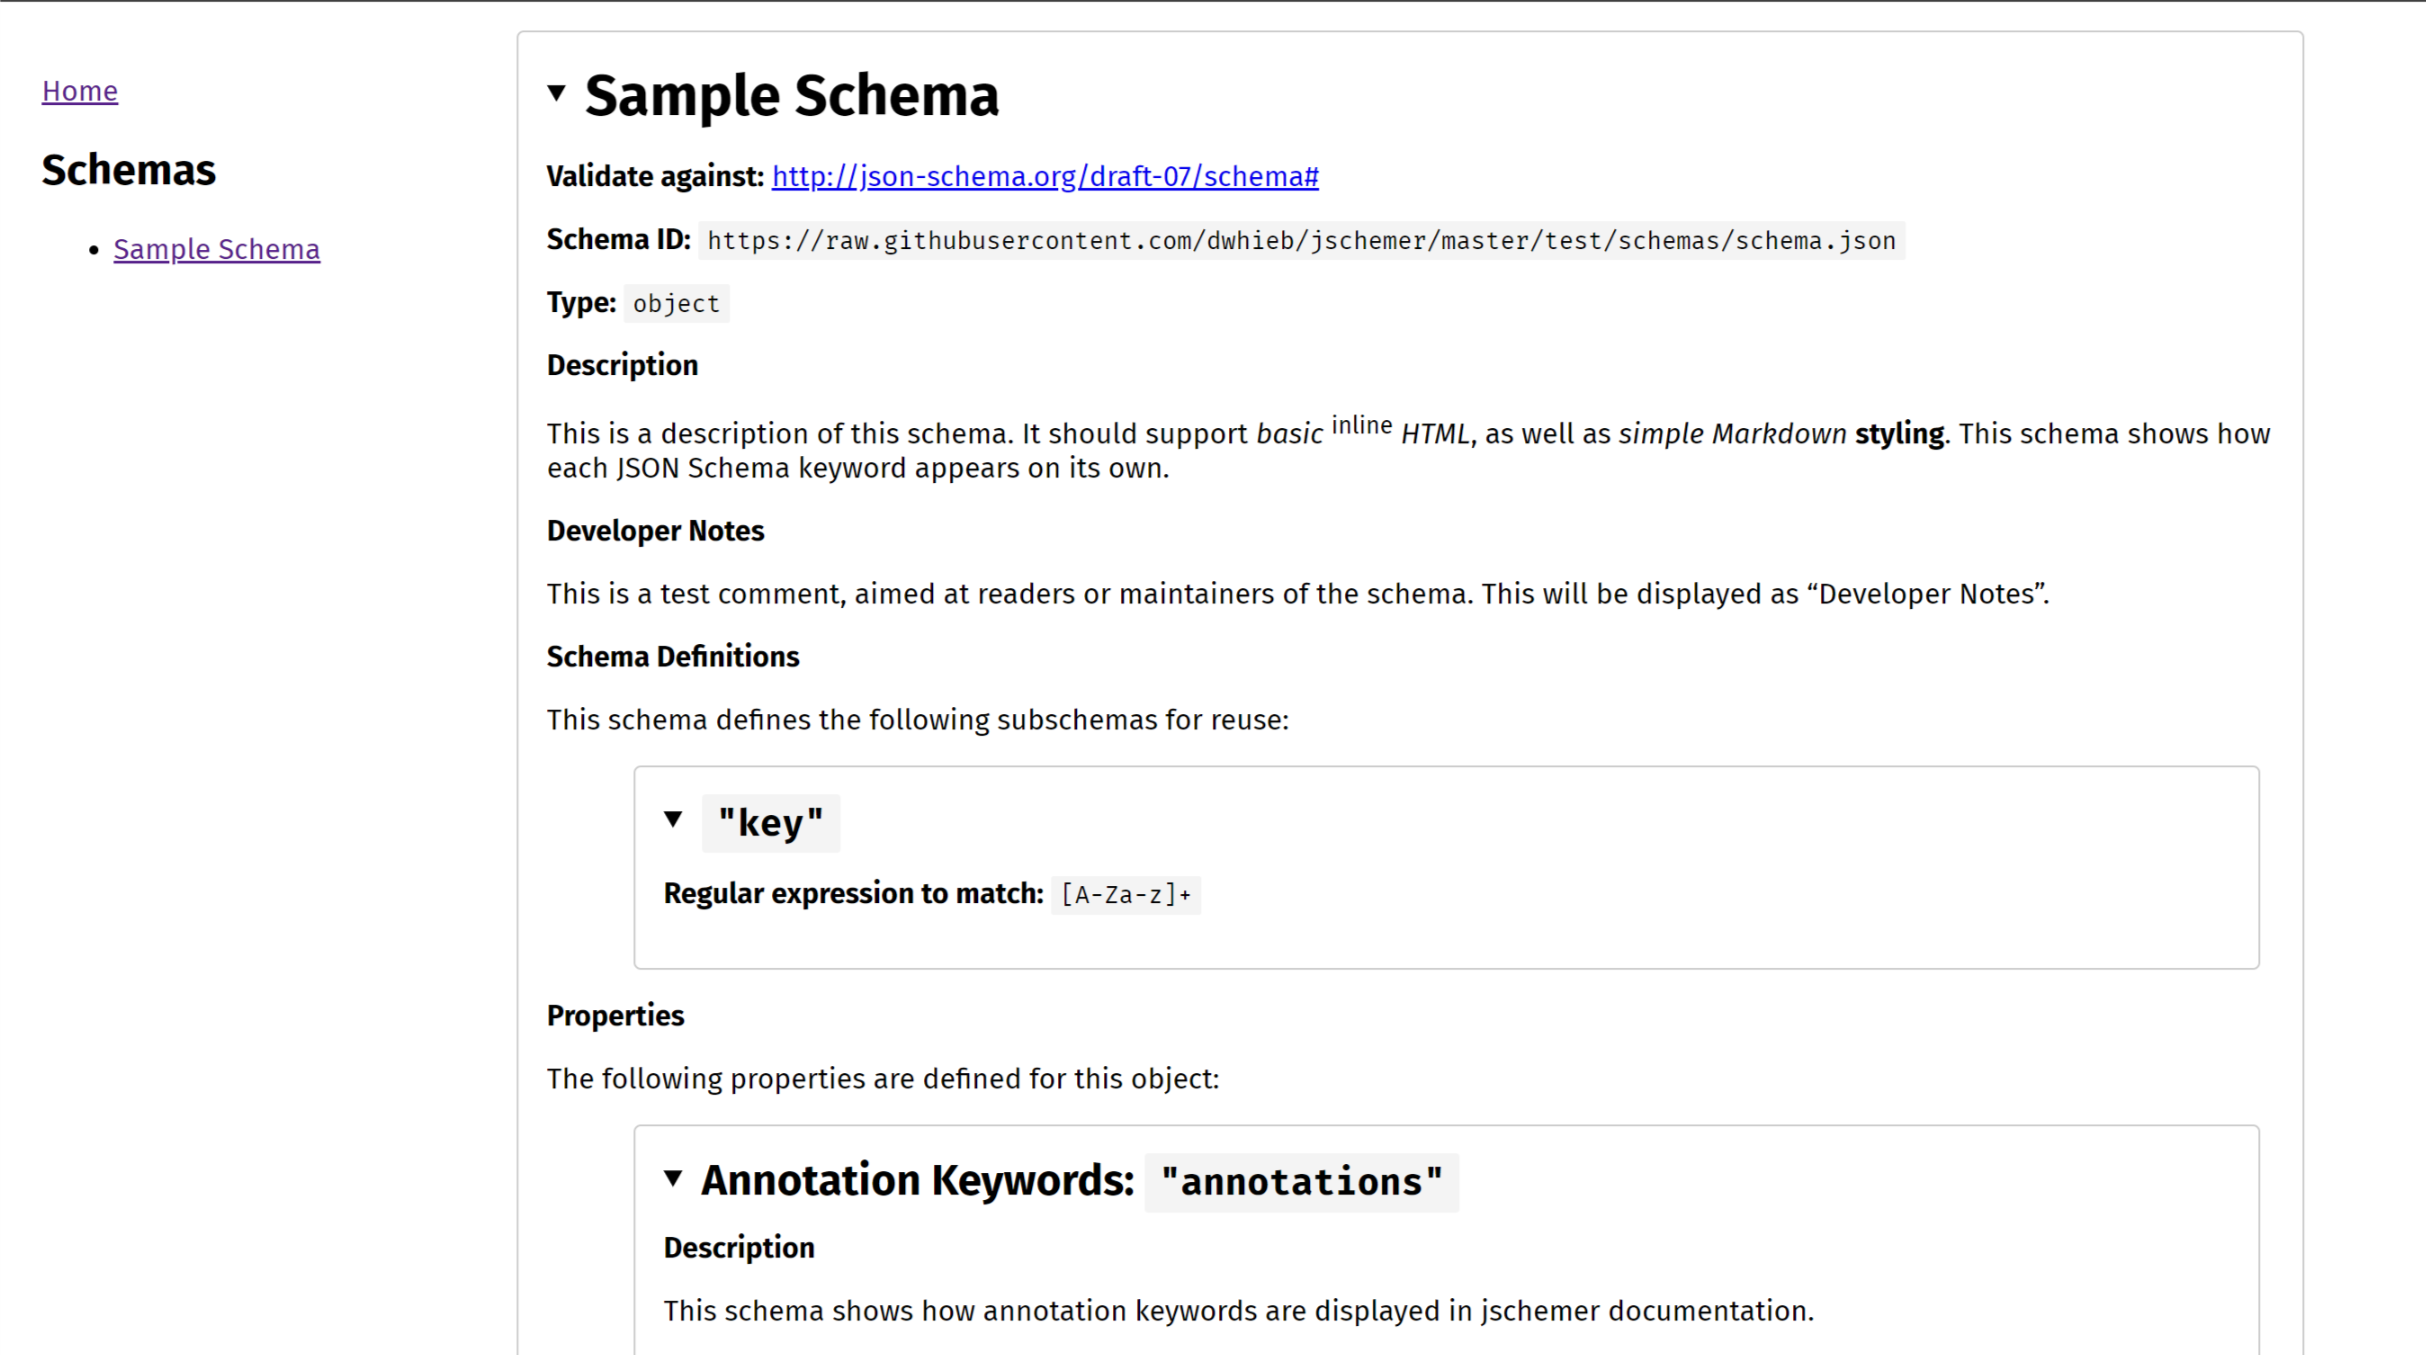 Screenshot of sample jschemer documentation